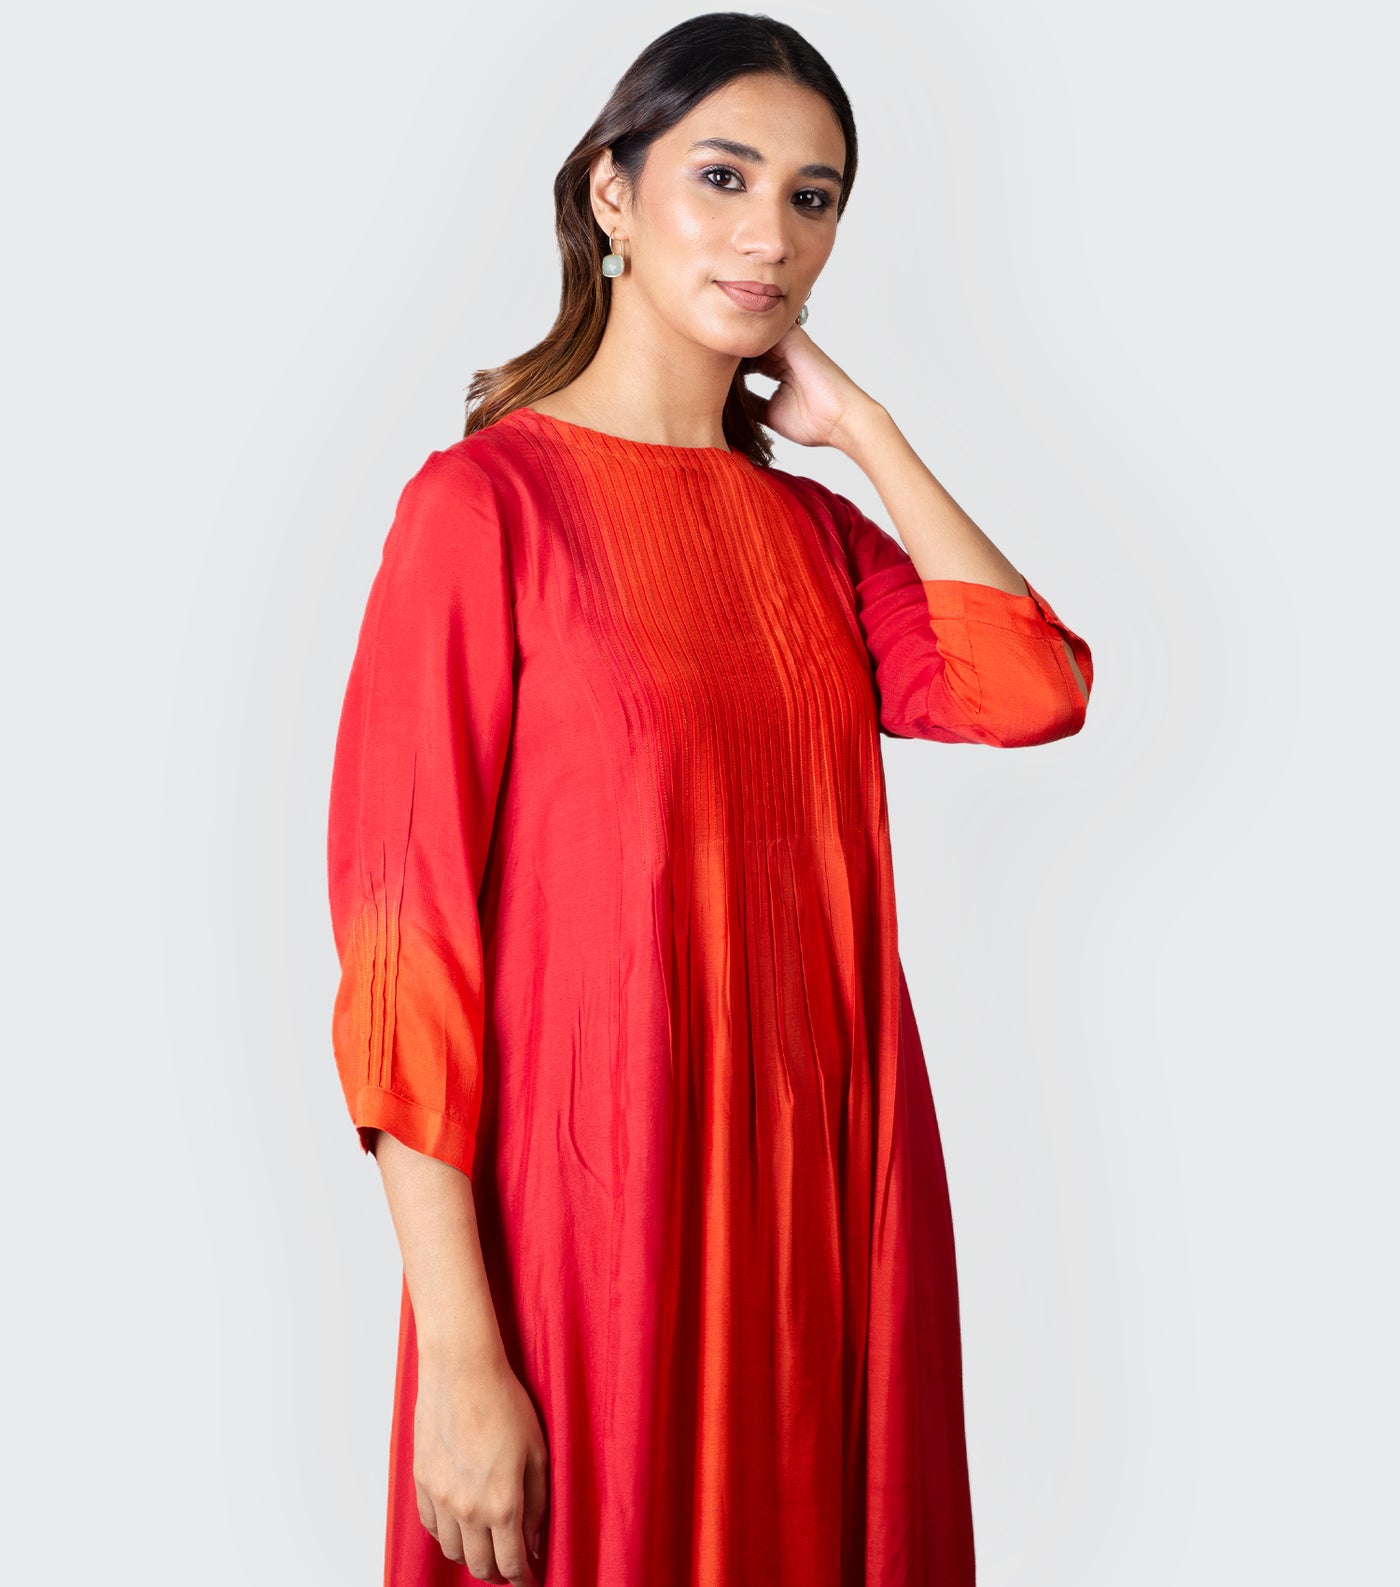 Red Orange Ombre Dye Dress